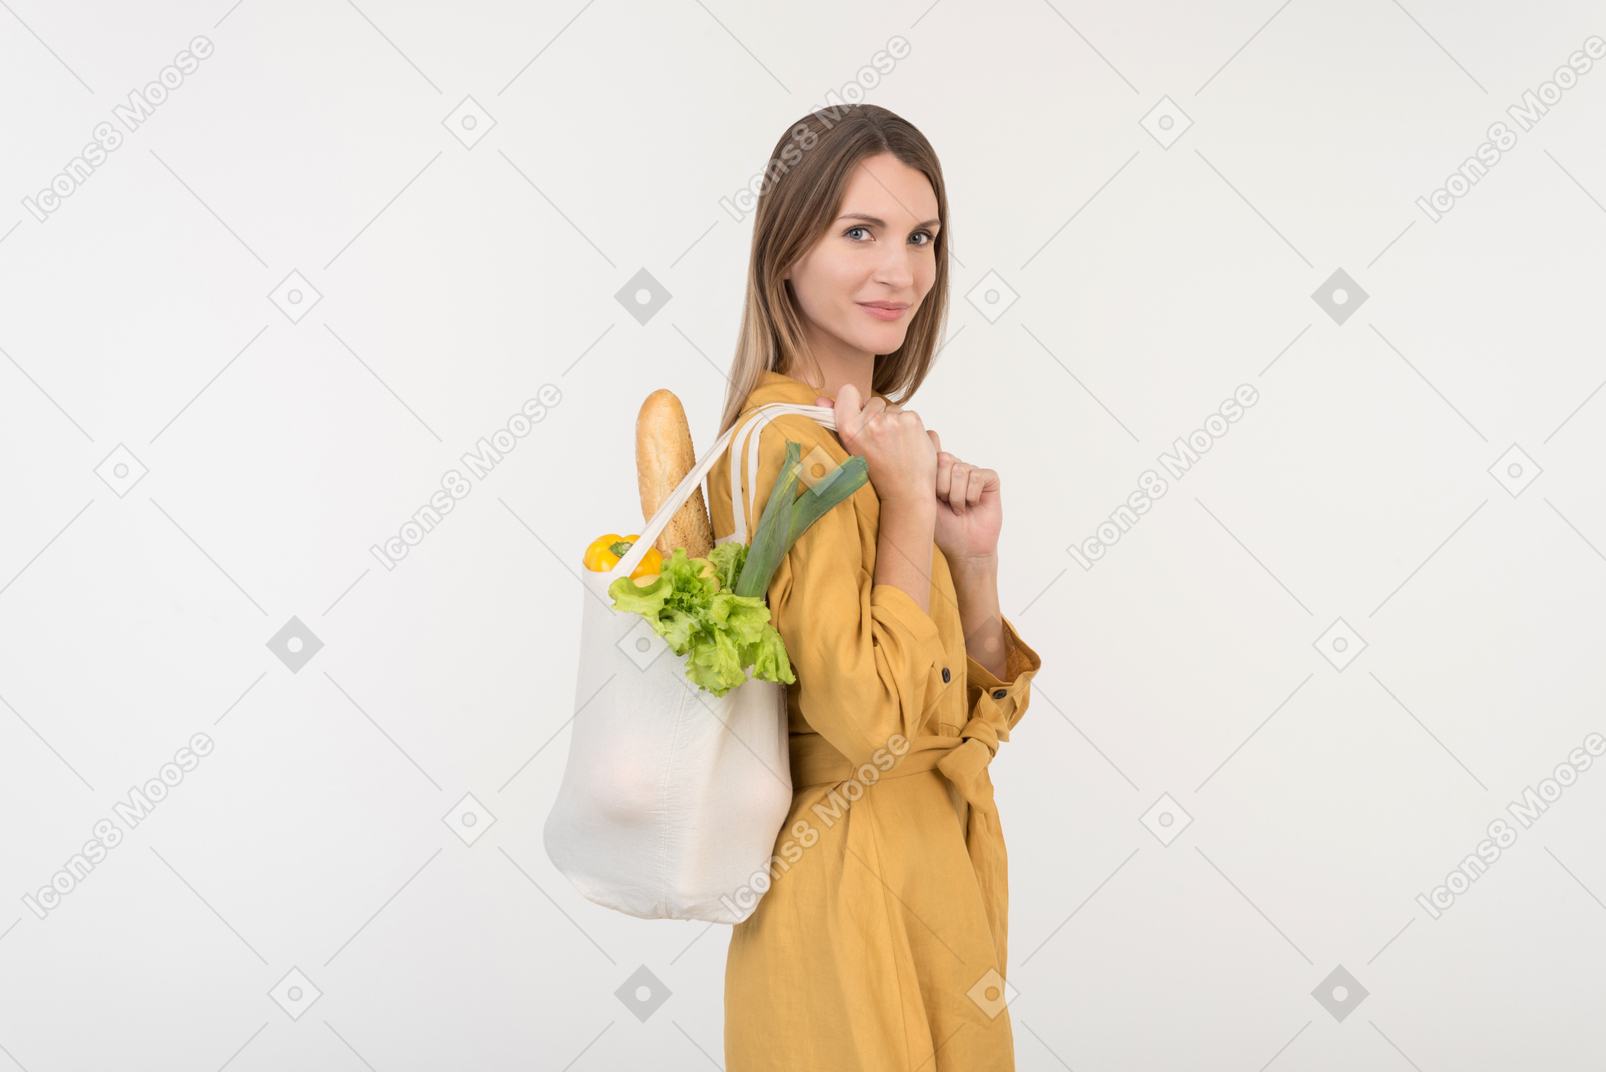 Giovane donna con la borsa della spesa con verdure e guardando verso il basso